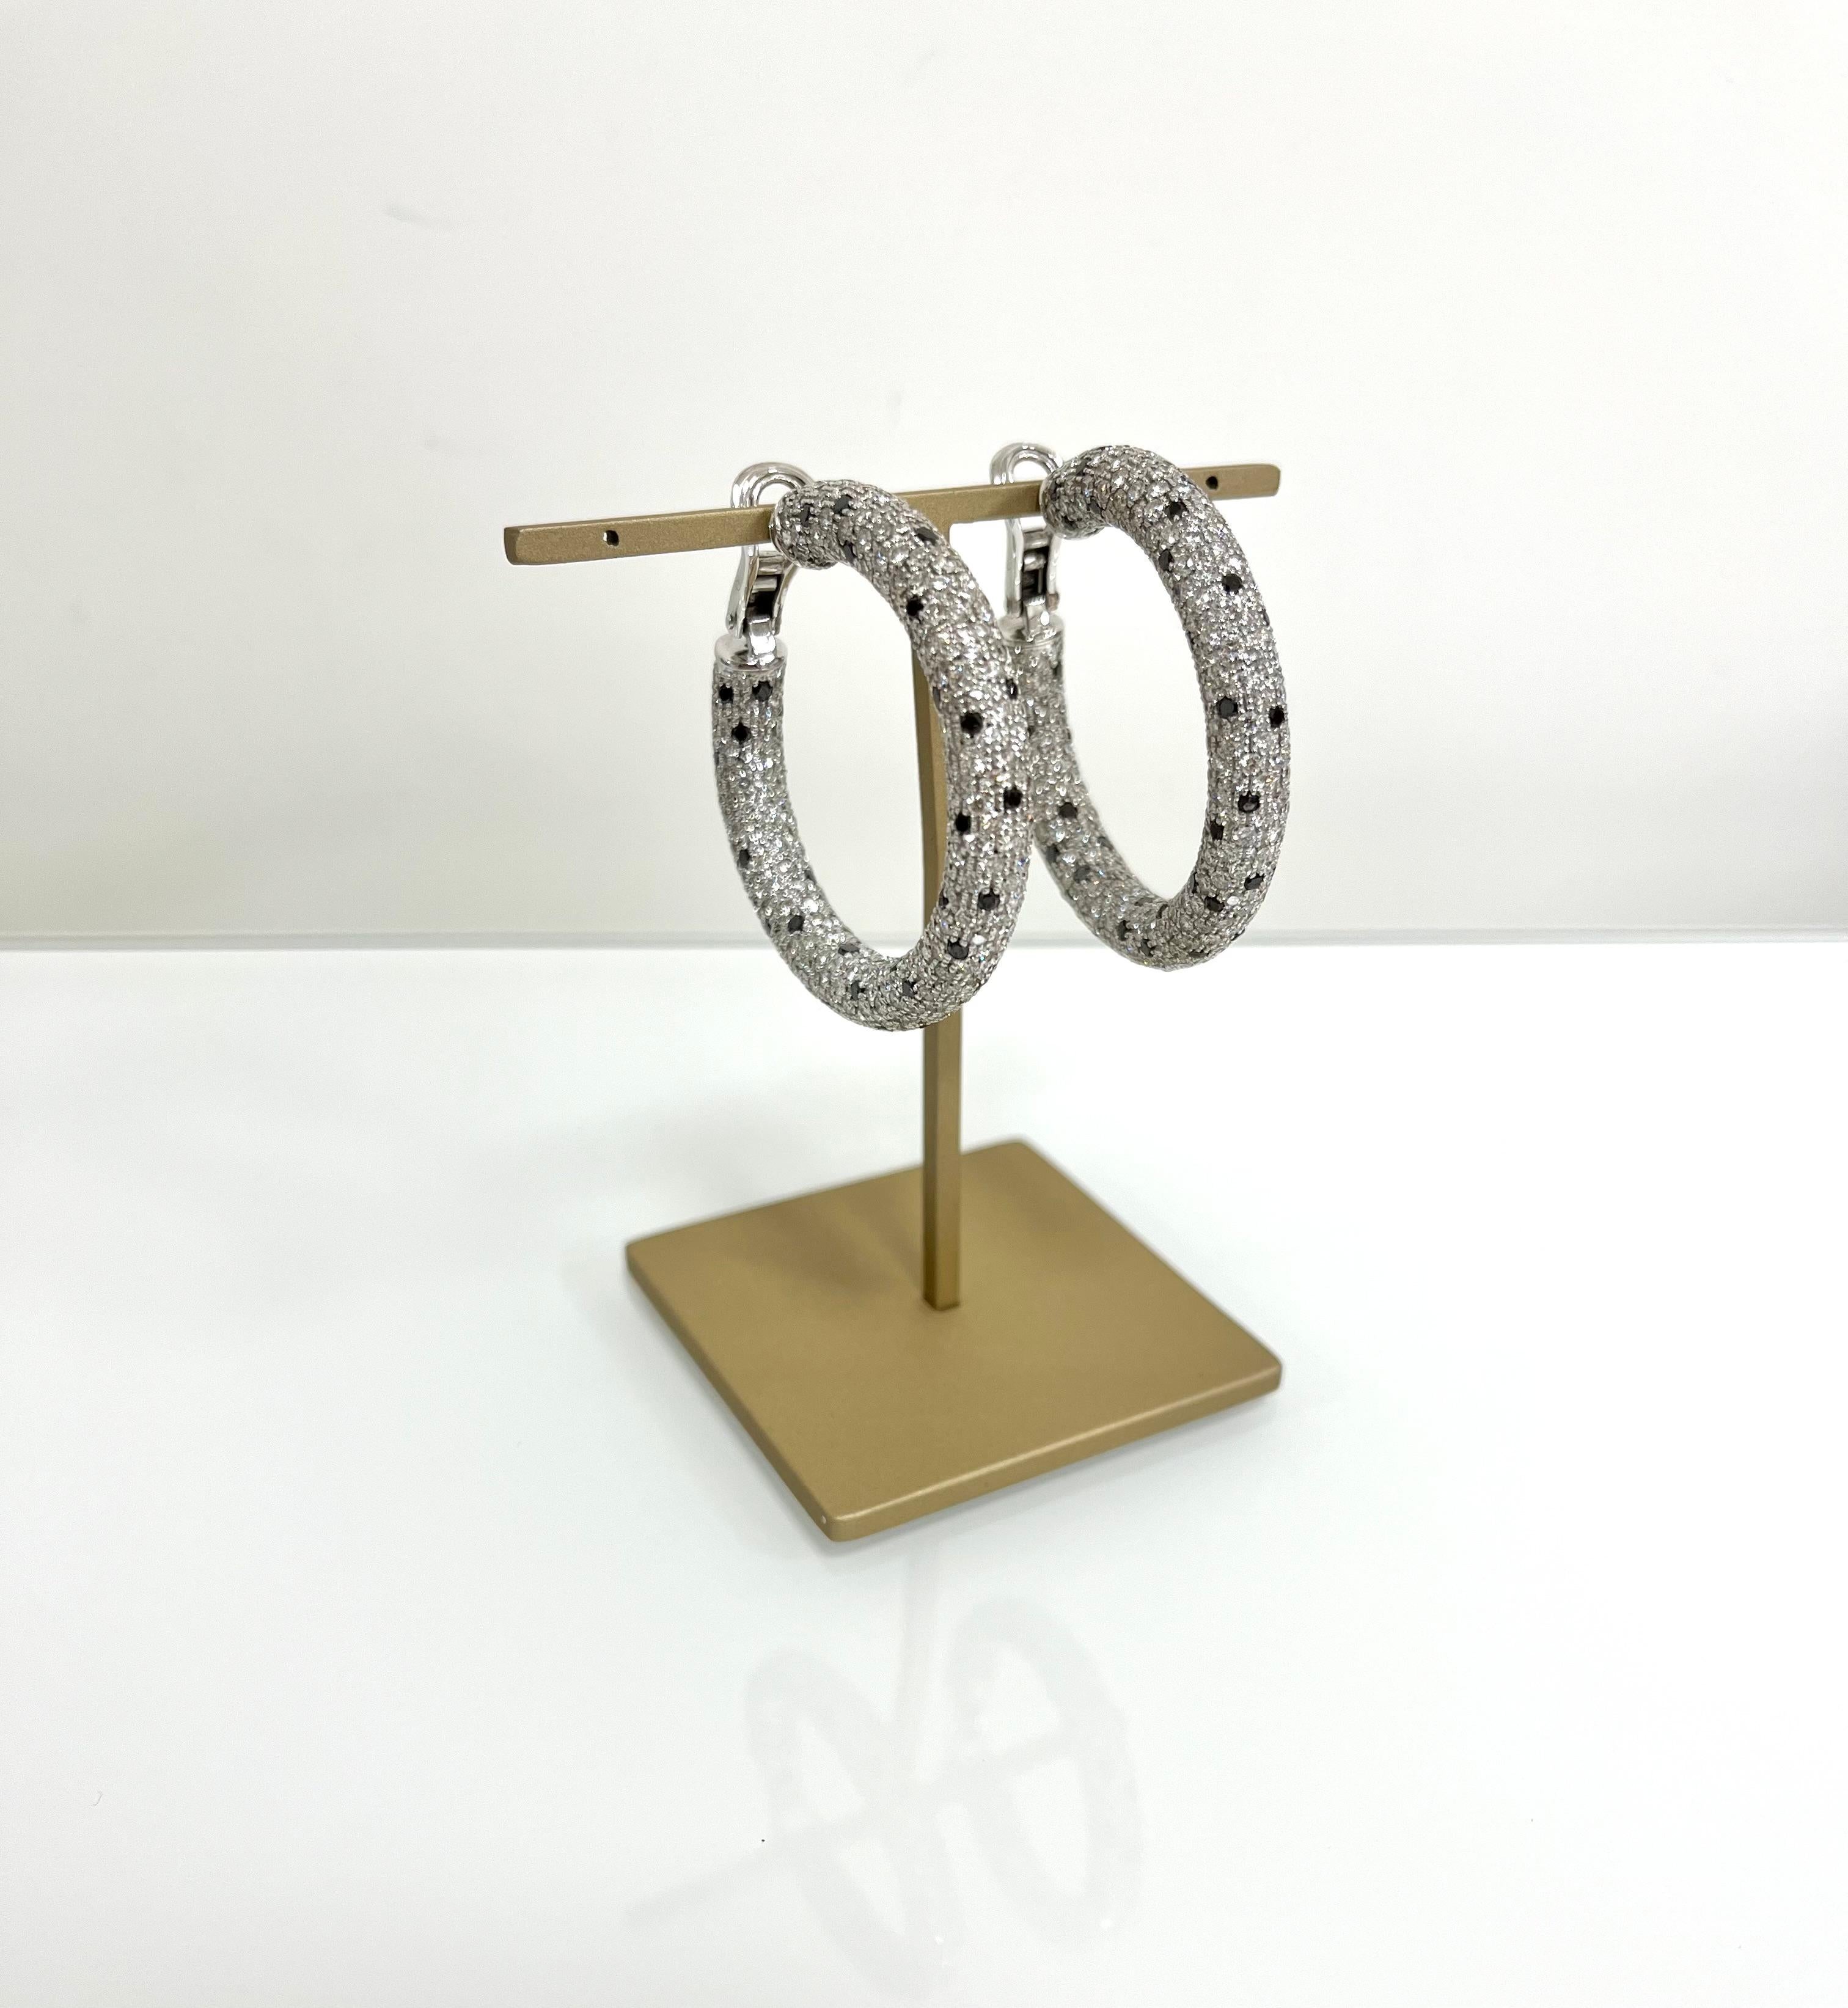 Modern Fraleoni 18 Kt. White Gold Black and White Diamonds Hoops Earrings For Sale